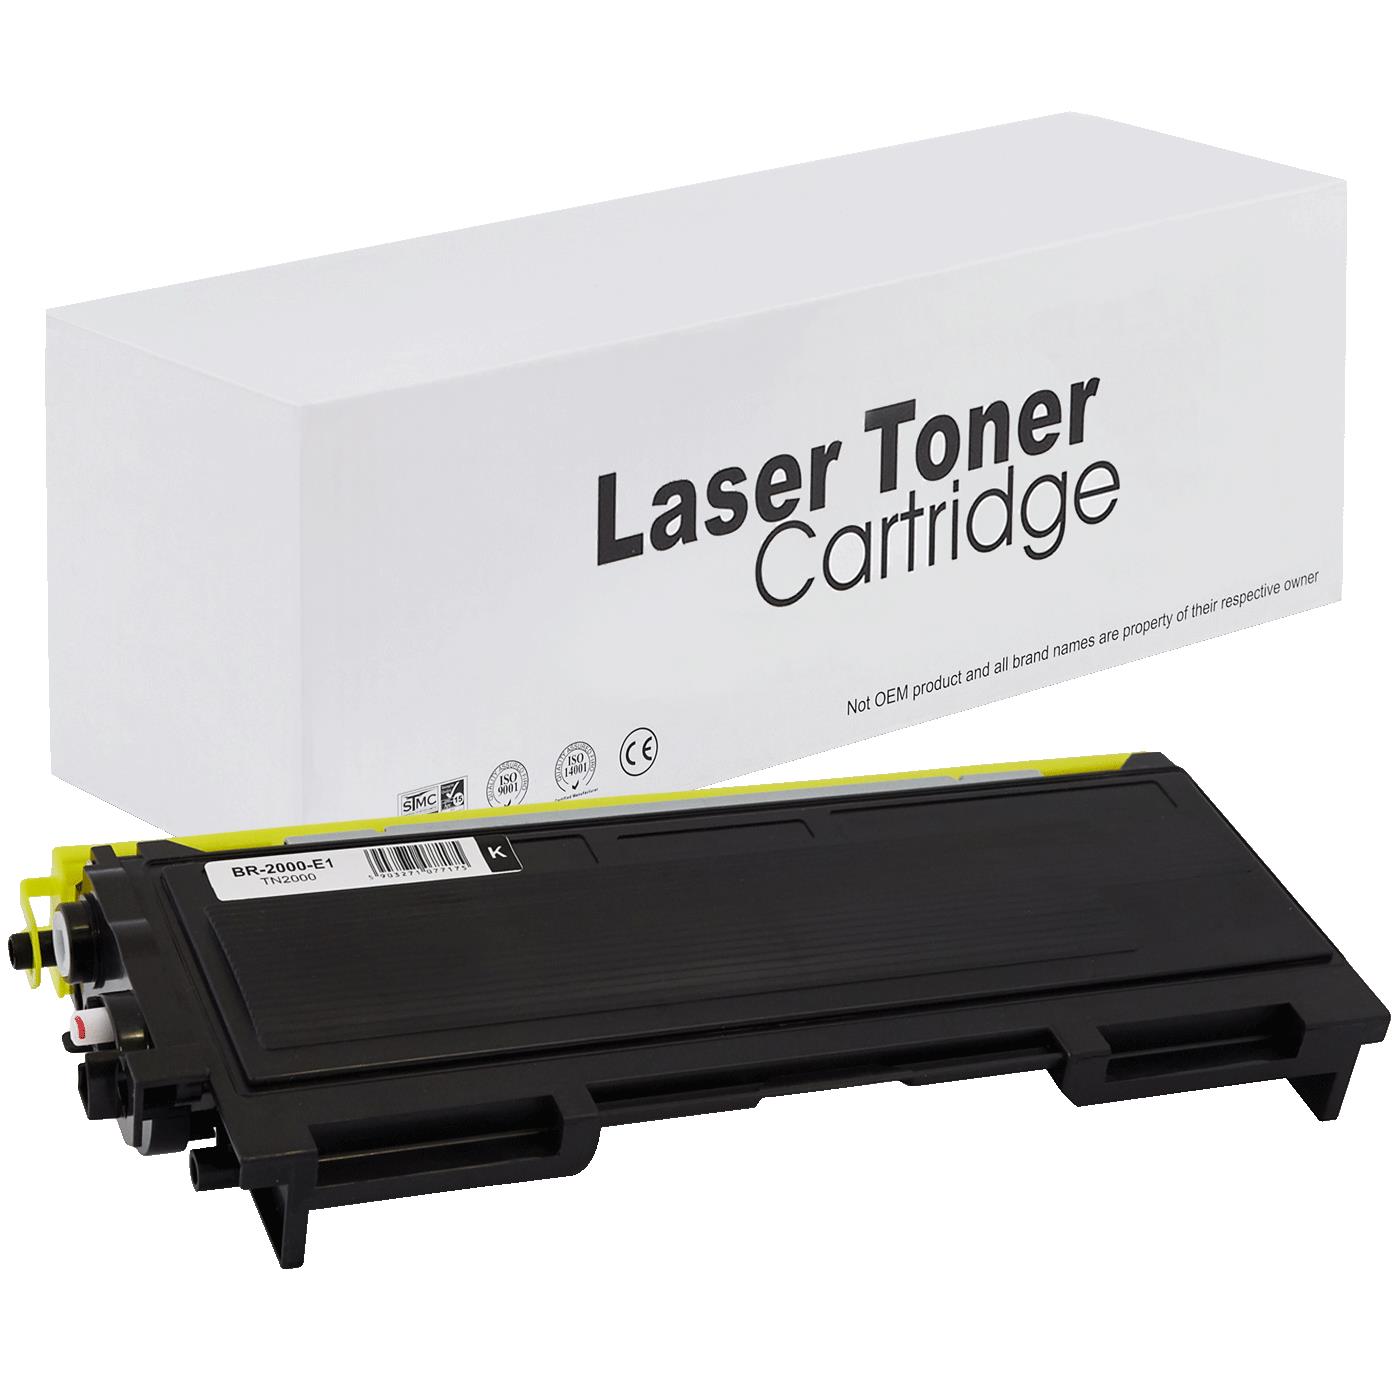 съвместима тонер касета за принтери и печатащи устройства на Brother MFC 7420 Toner BR-2000 | TN2000. Ниски цени, прецизно изпълнение, високо качество.